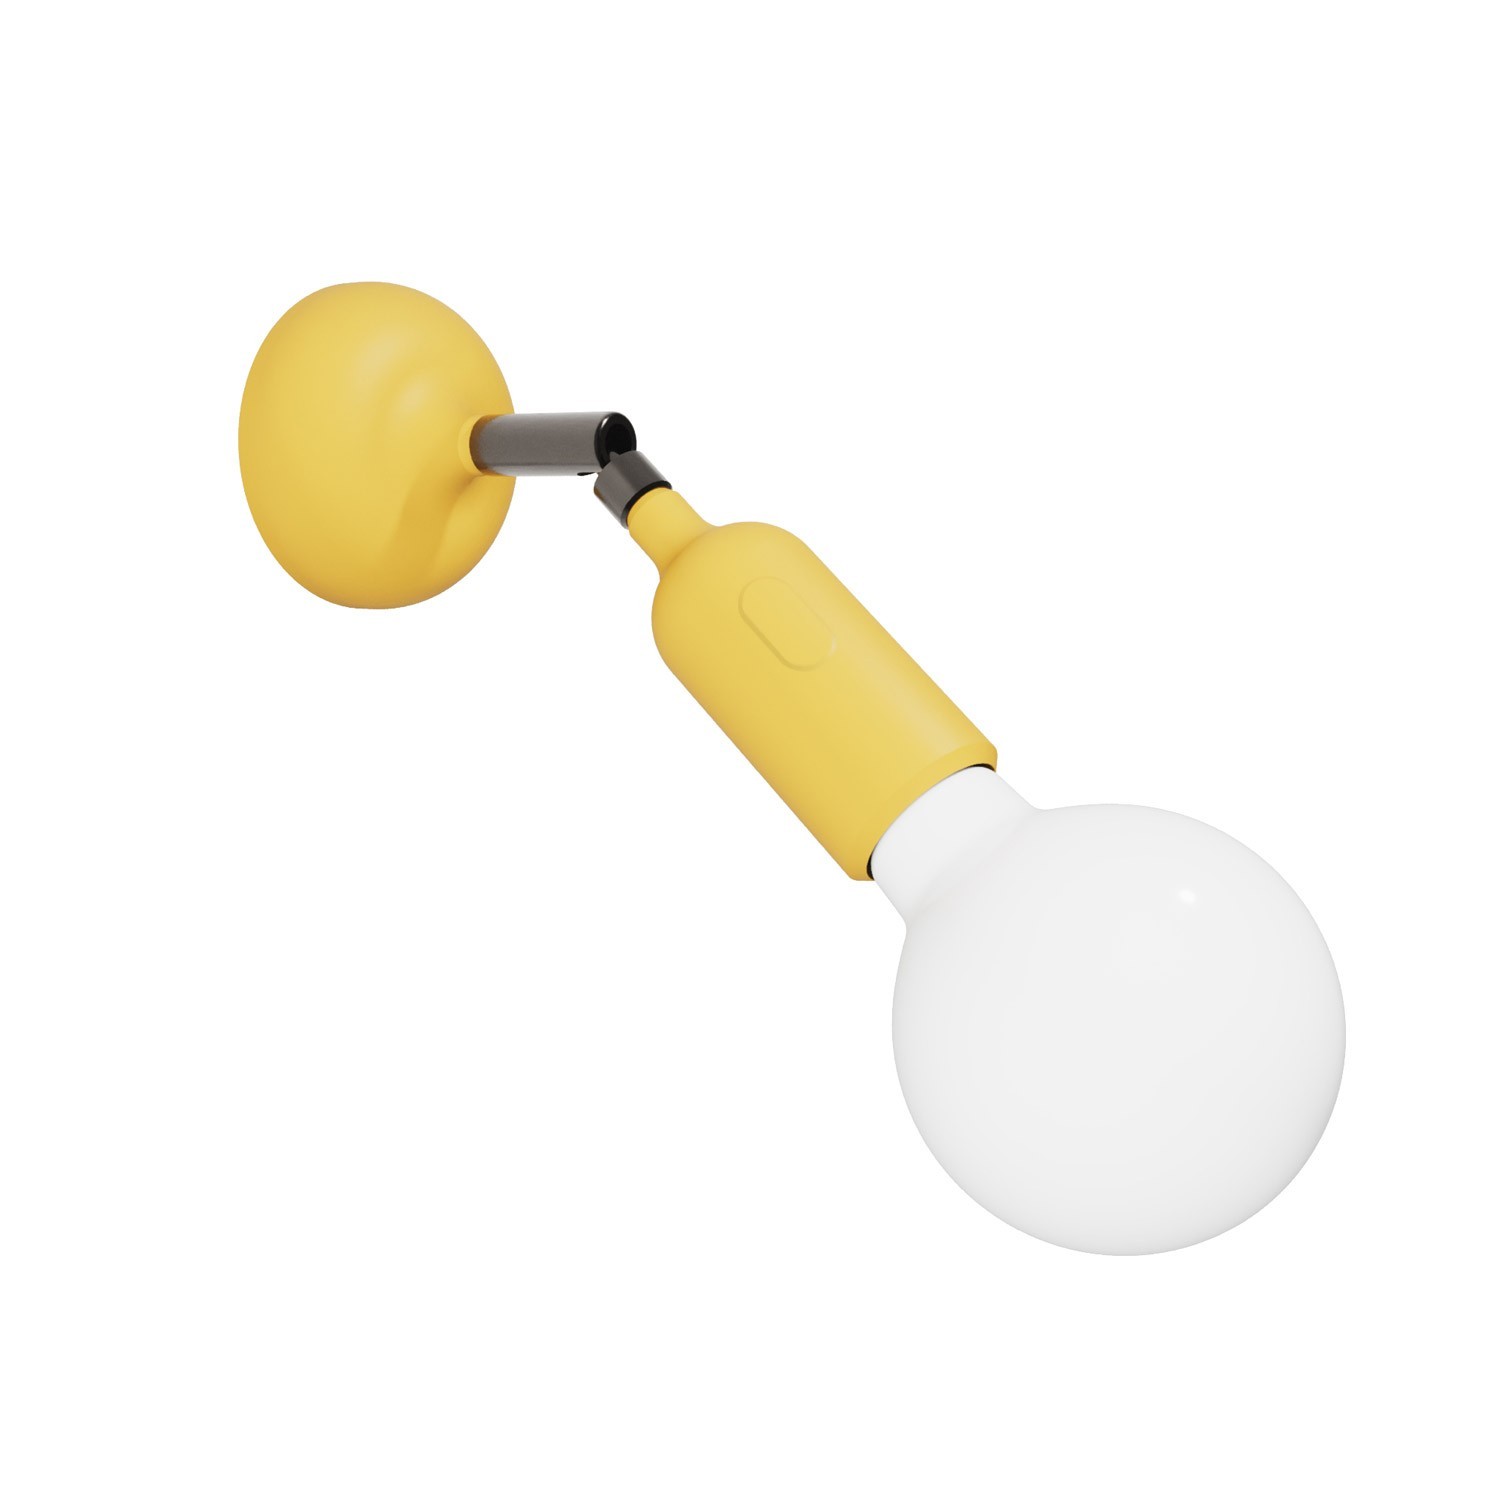 Lámpara Fermaluce de silicona con articulación y con interruptor incorporado